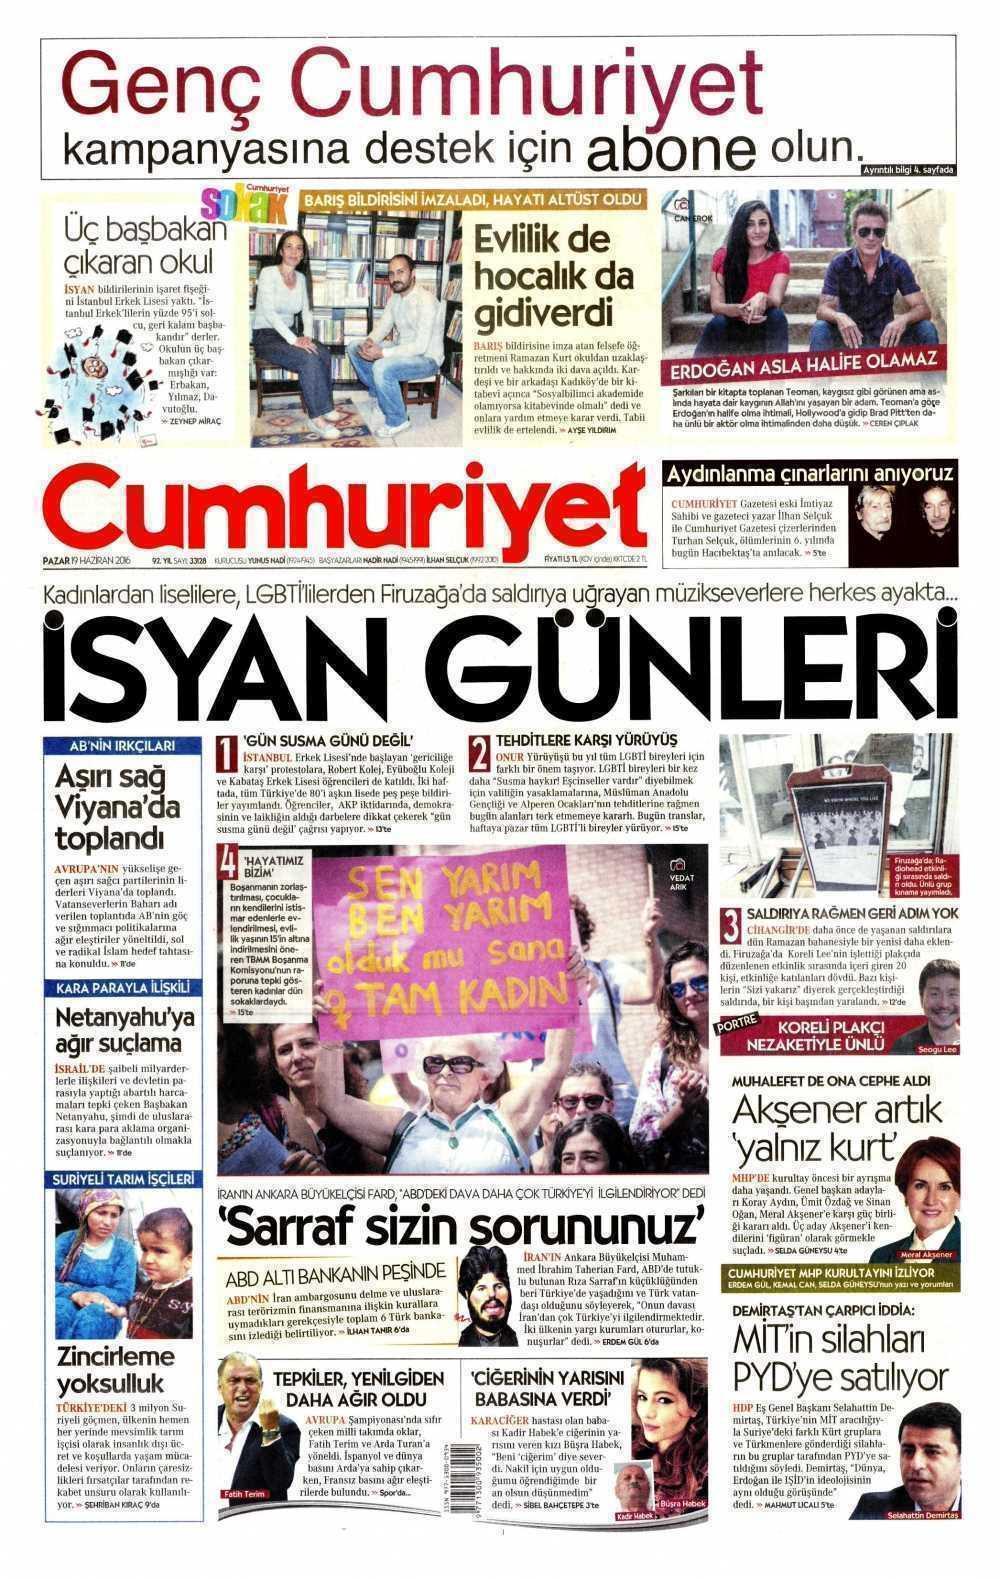 Cumhuriyet Gazetesi.